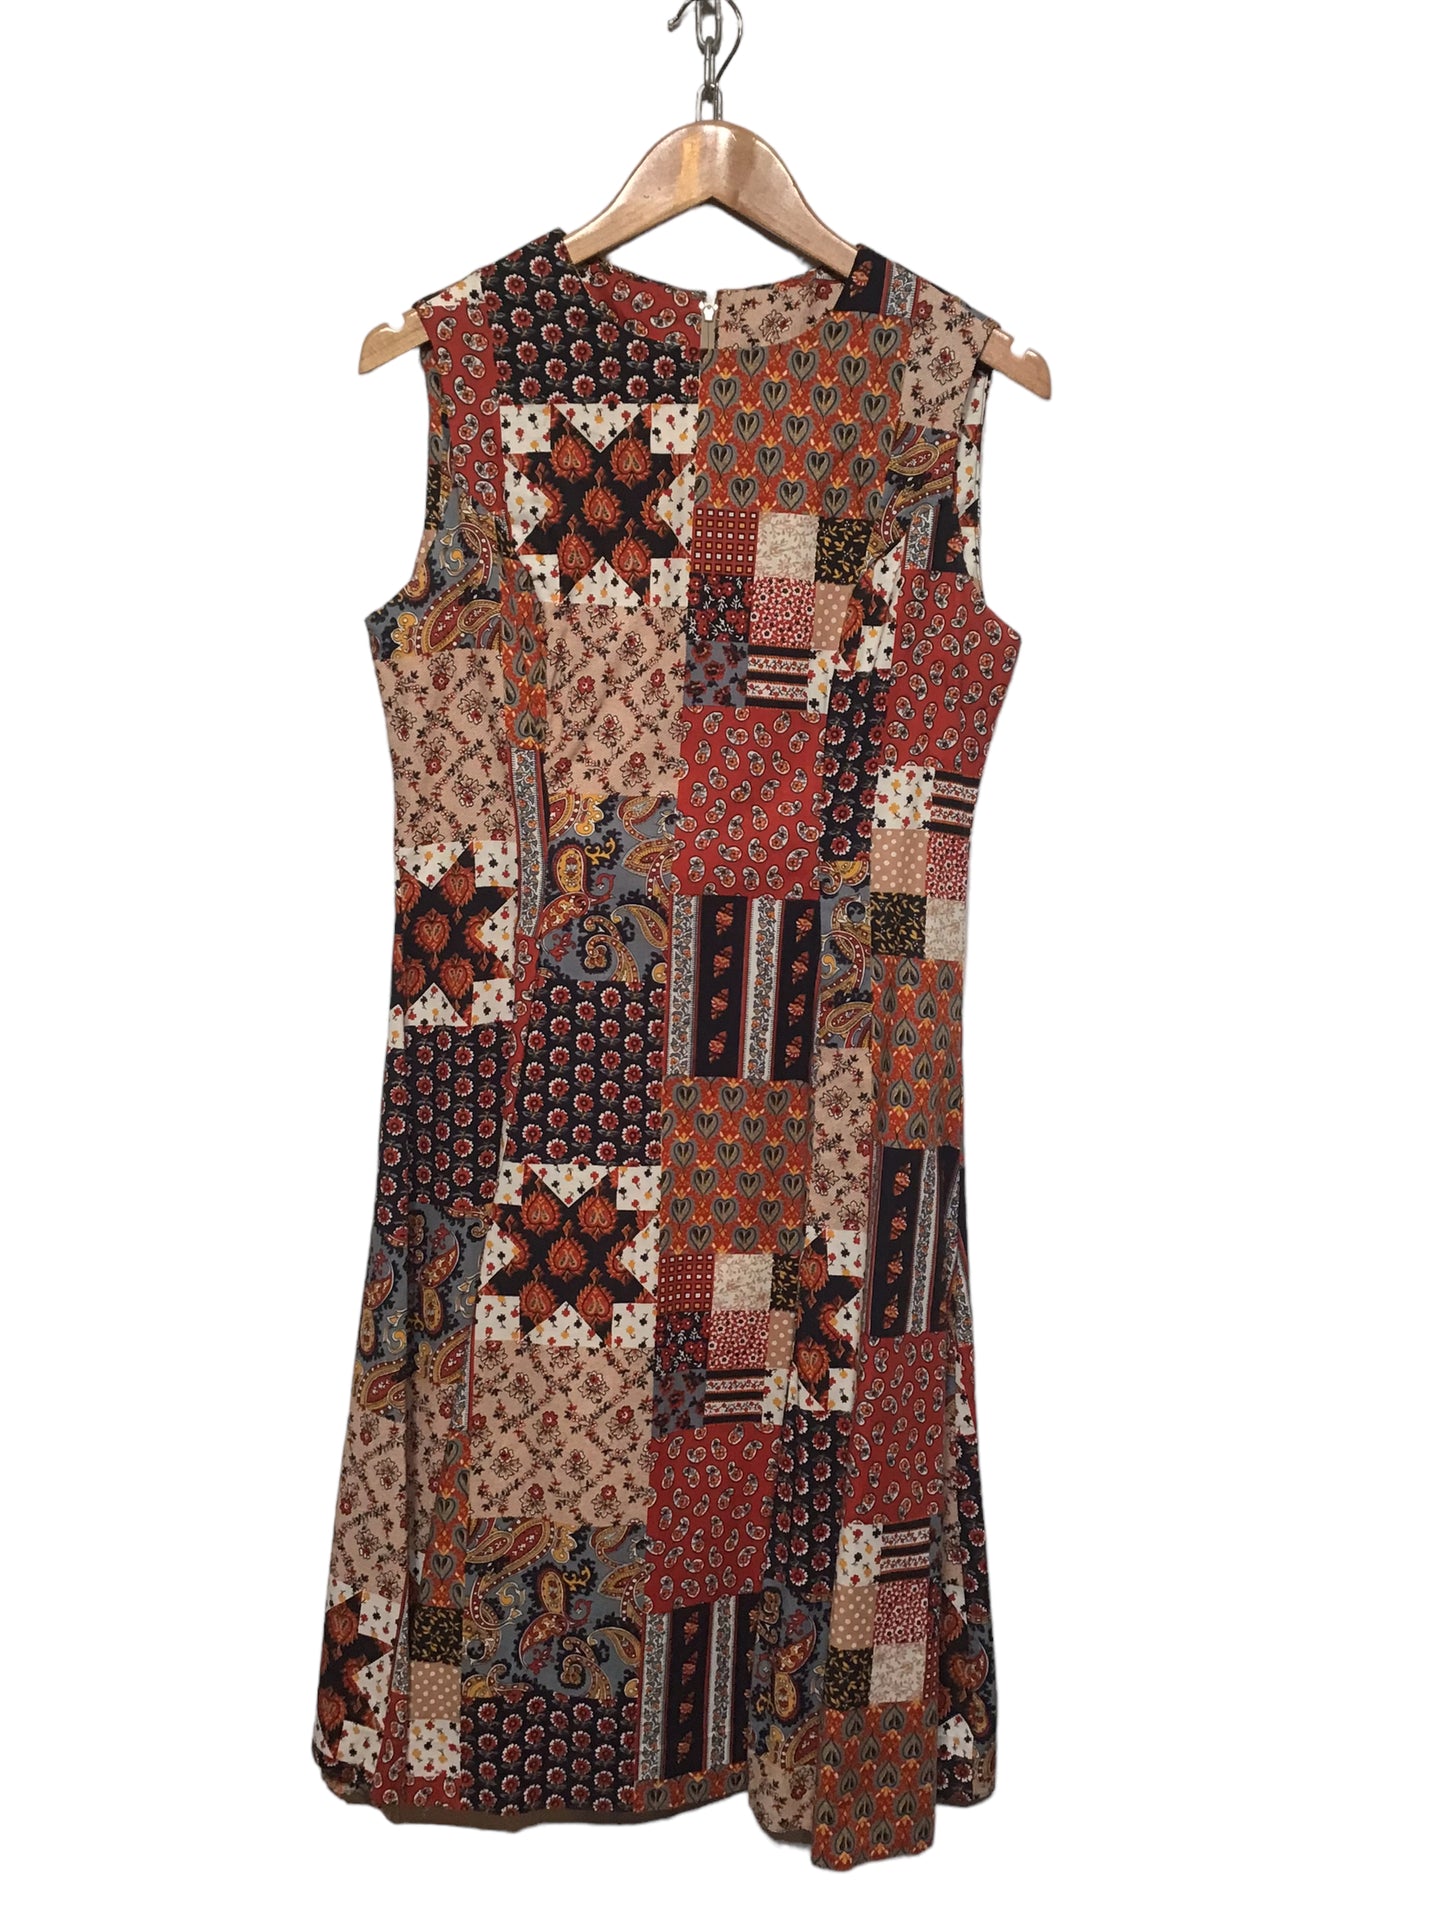 Patterned Dress (Size L)